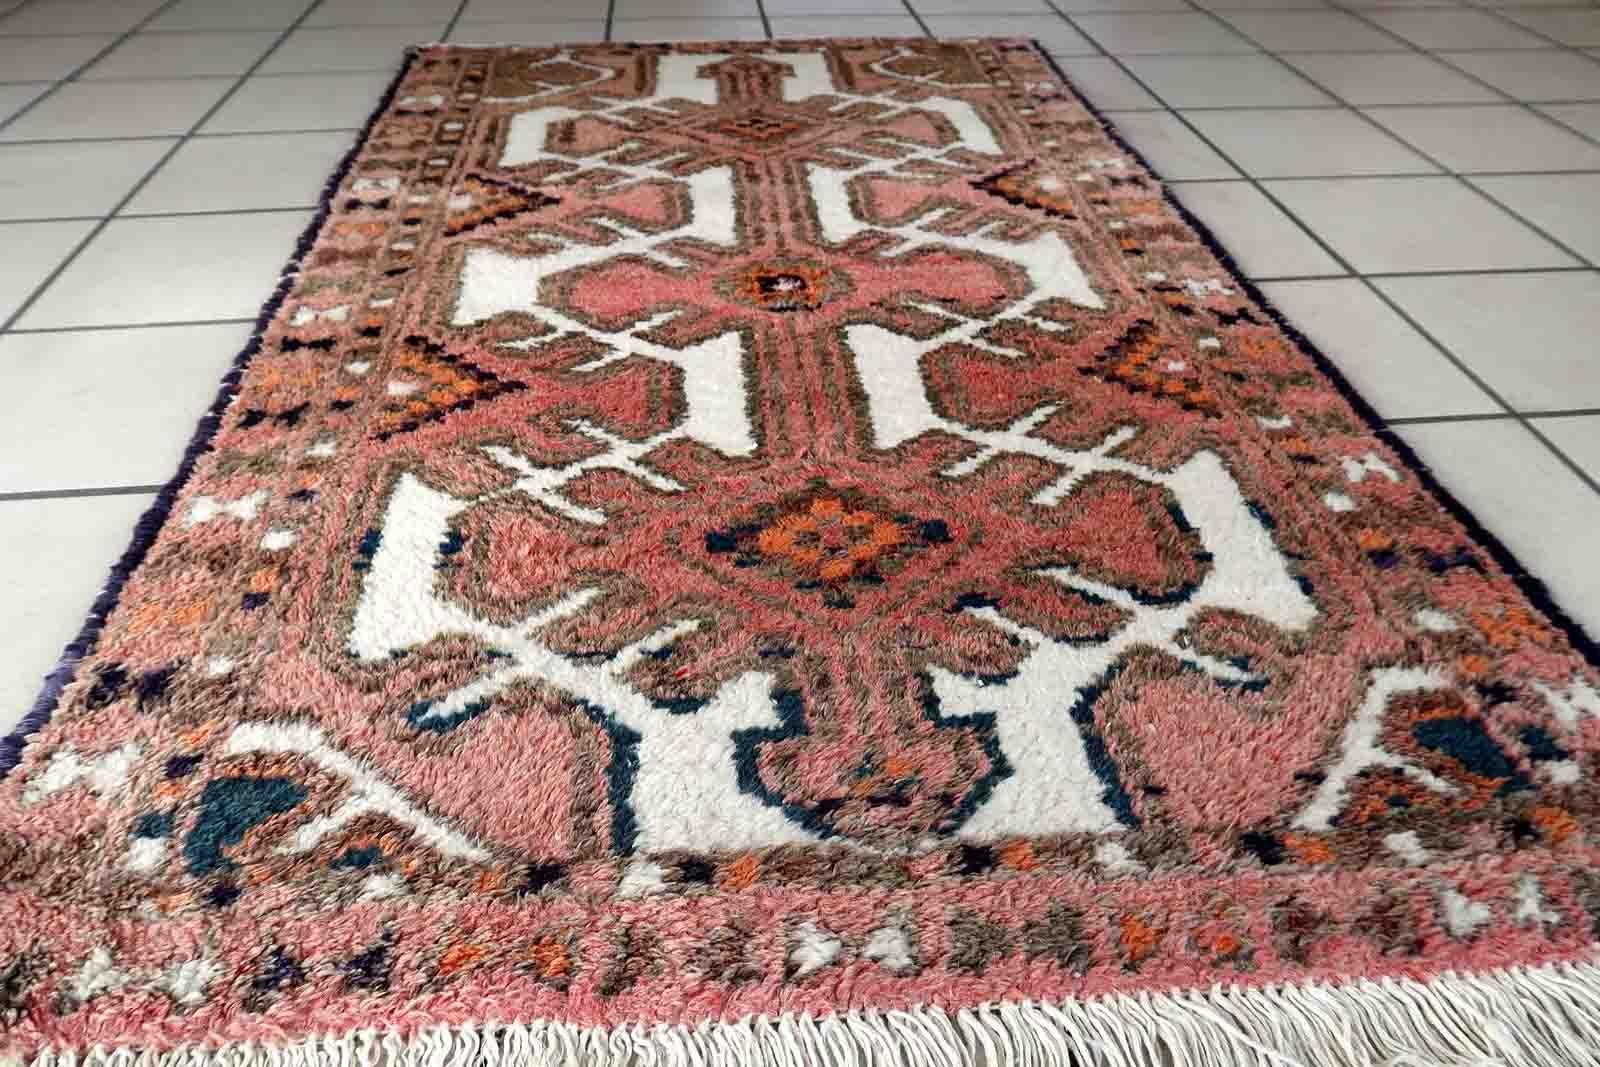 Handgefertigter Vintage-Teppich aus Hamadan mit Medaillon-Muster. Der Teppich ist in einem guten Originalzustand vom Ende des 20. Jahrhunderts.

-Zustand: original gut,

-Umgebung: 1970er Jahre,

-Größe: 2,3' x 3,9' (72cm x 121cm),

-MATERIAL: